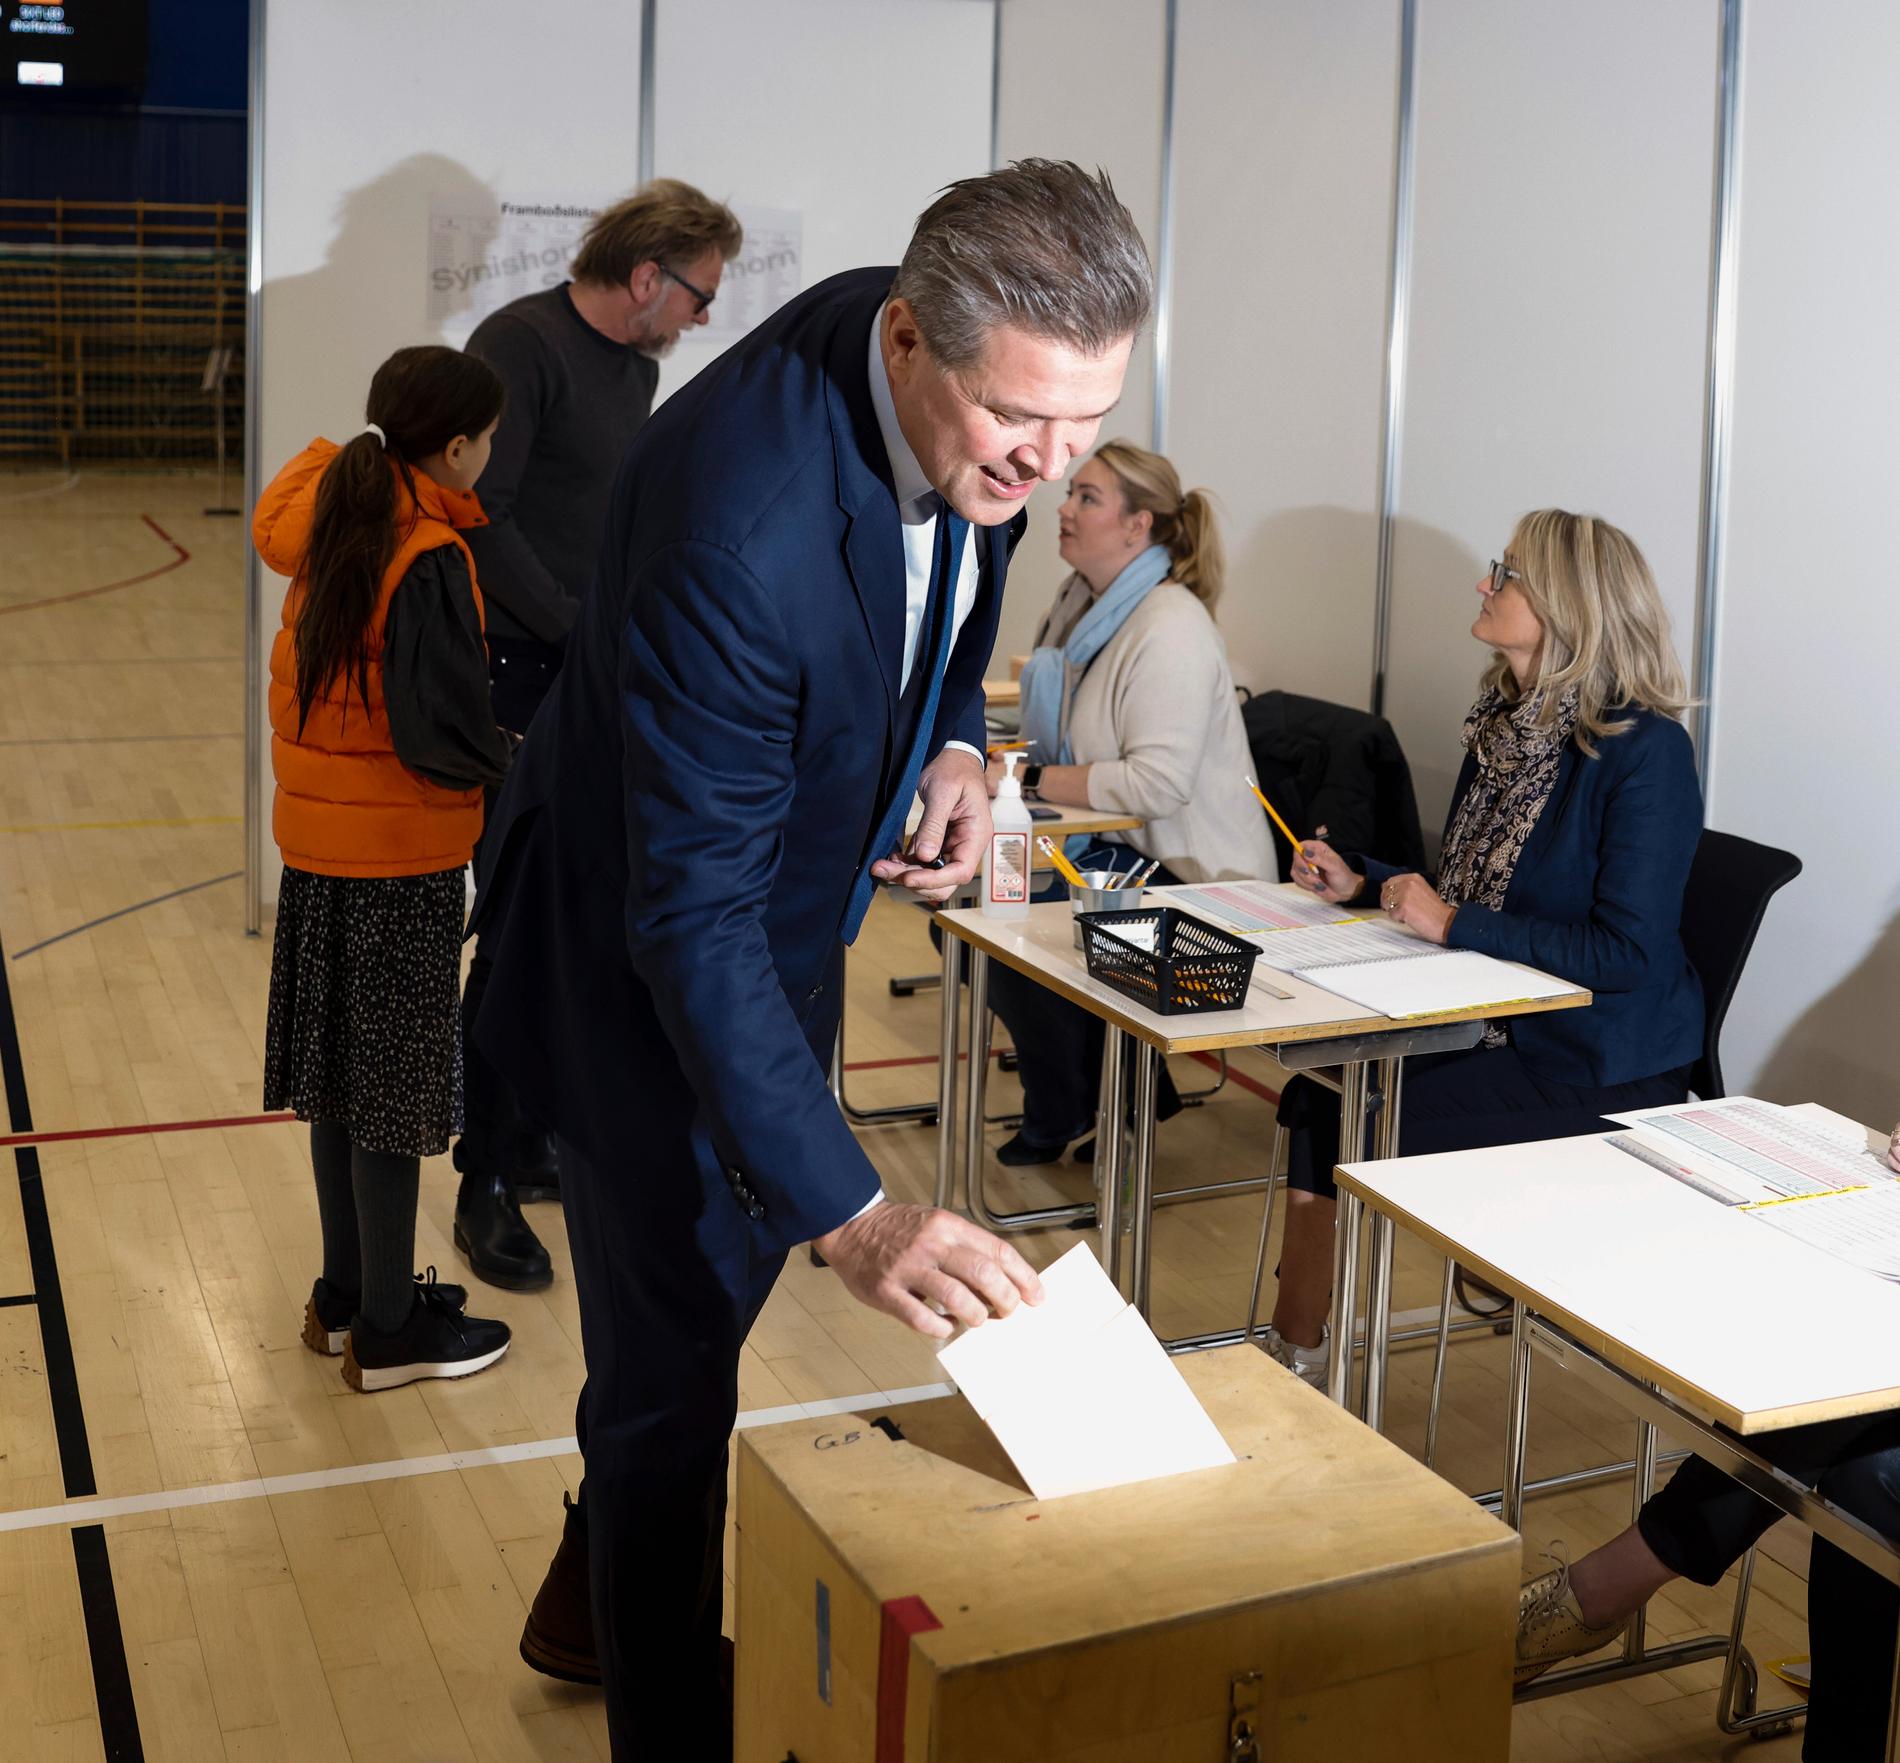 Bjarni Benediktsson röstar. Självständighetspartiet blir störst igen, men det är långt ifrån säkert att dess ledare blir statsminister.